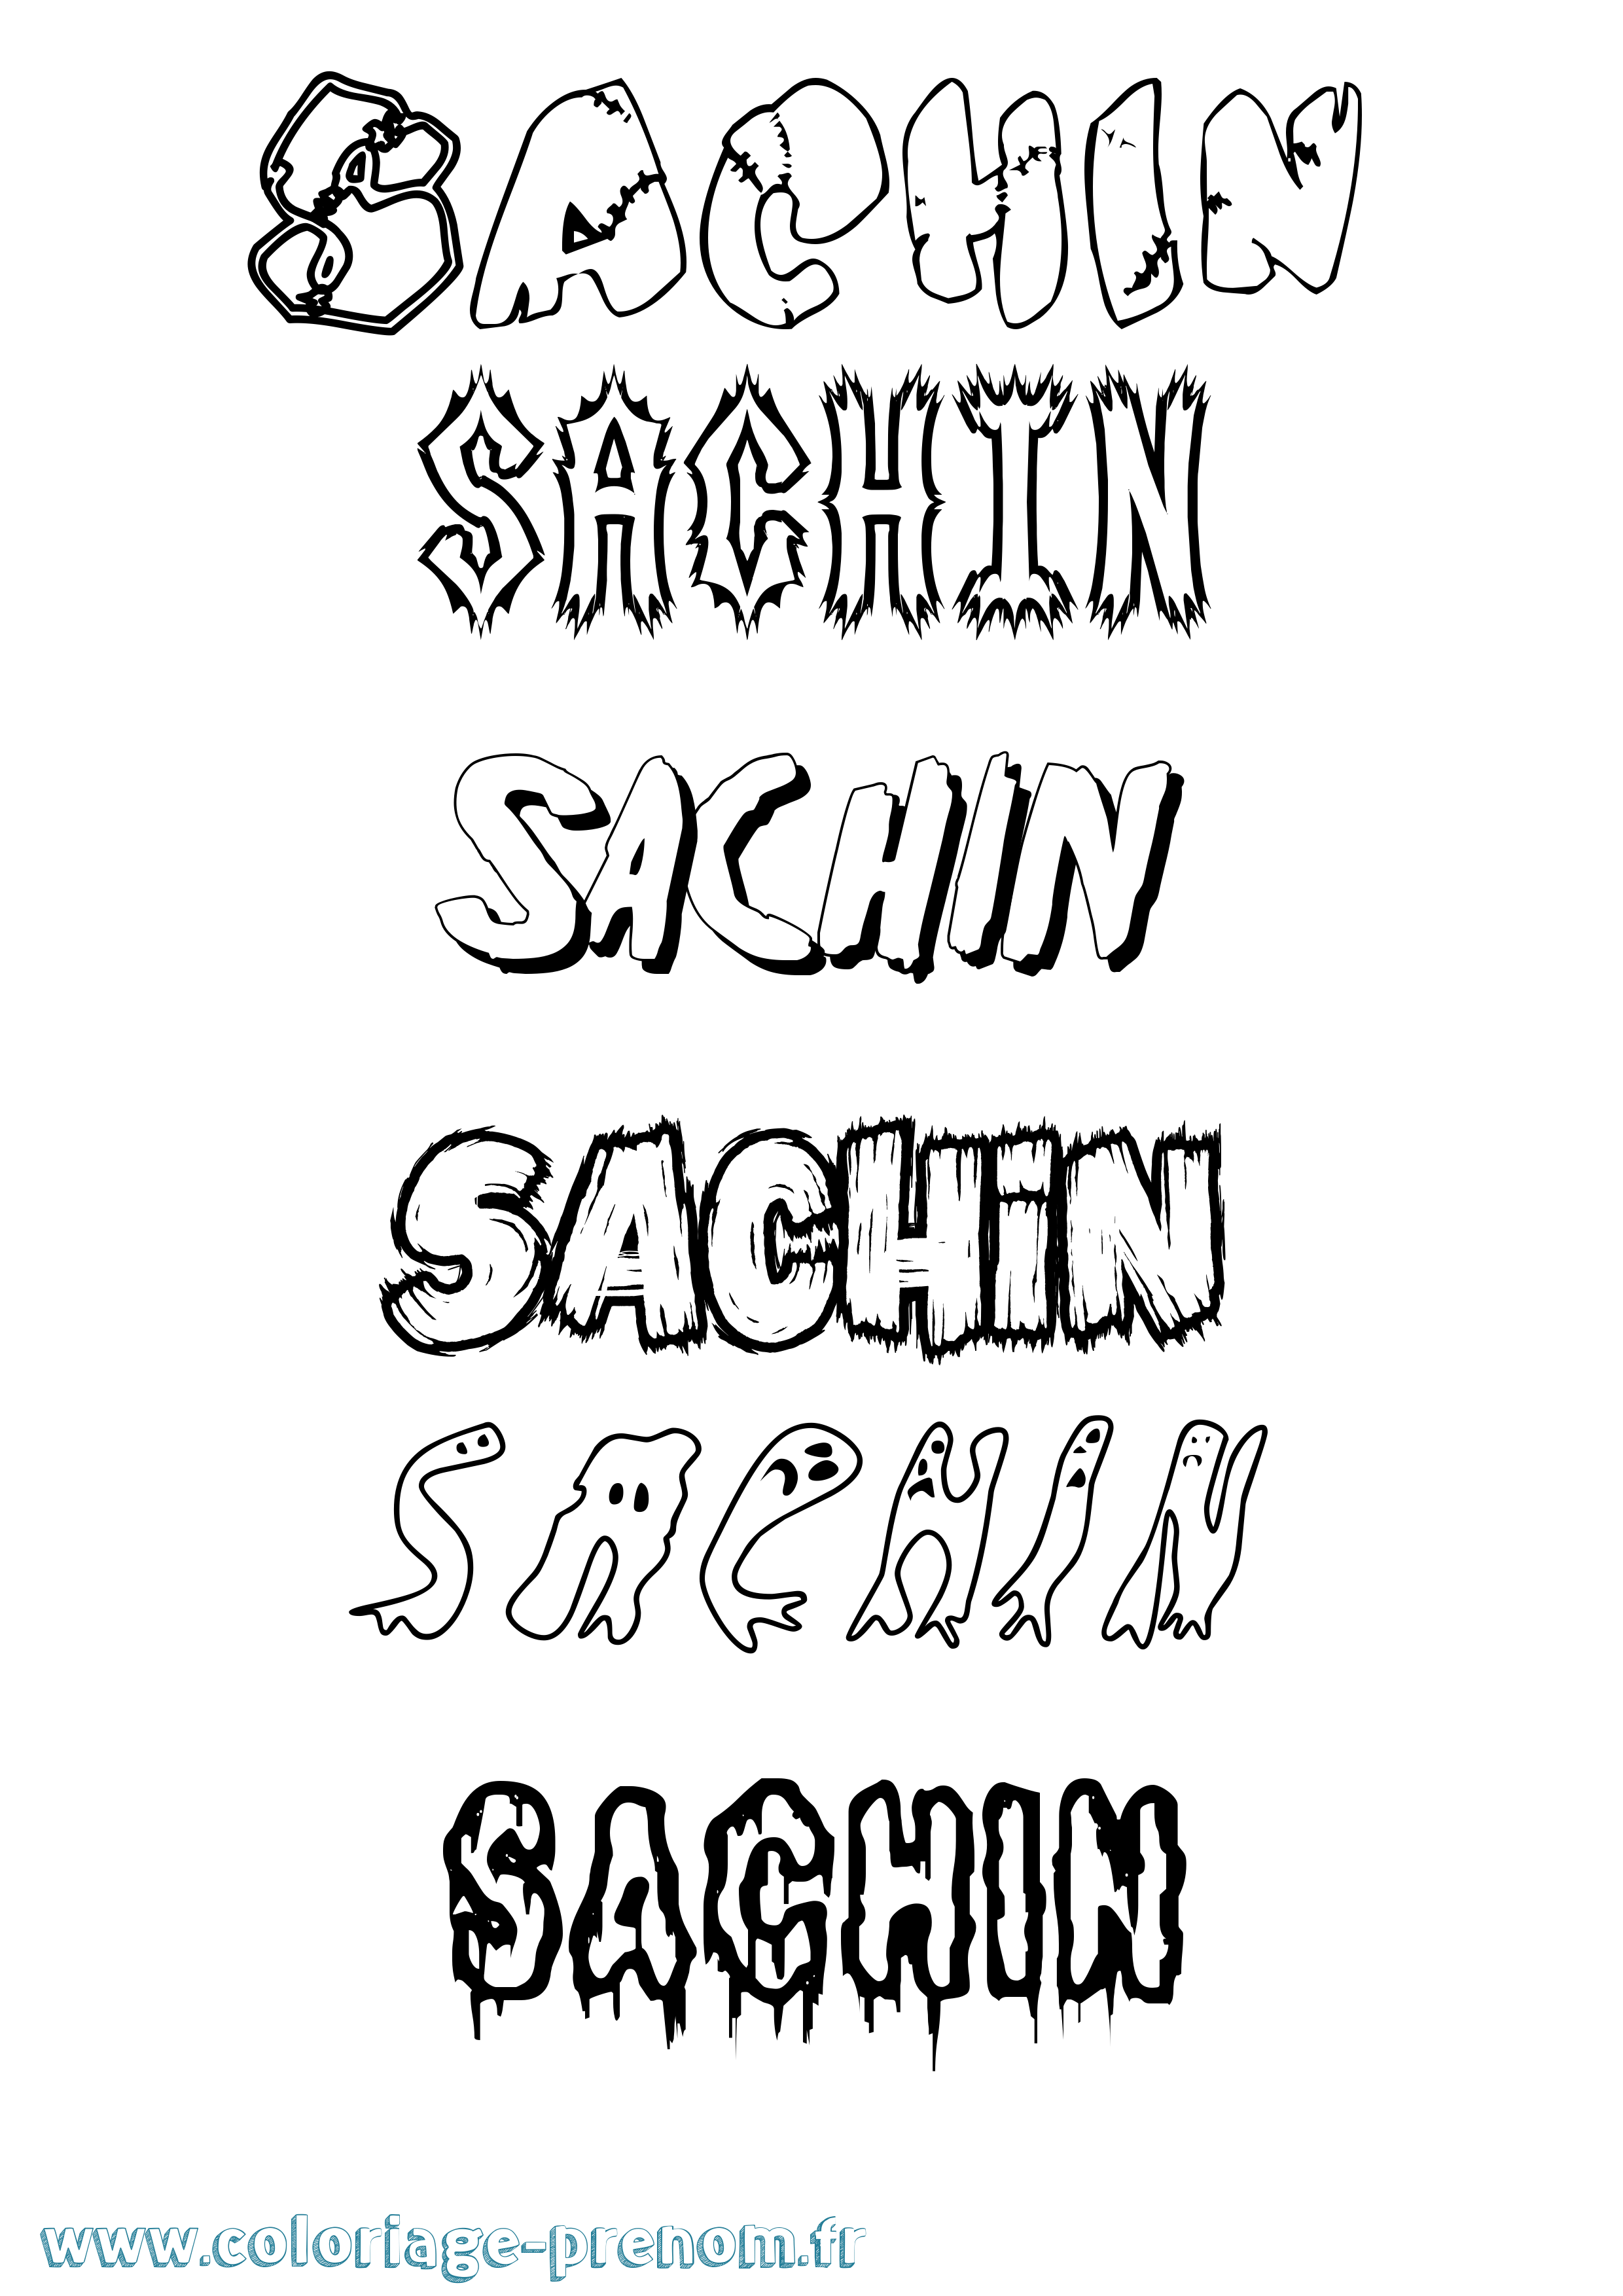 Coloriage prénom Sachin Frisson